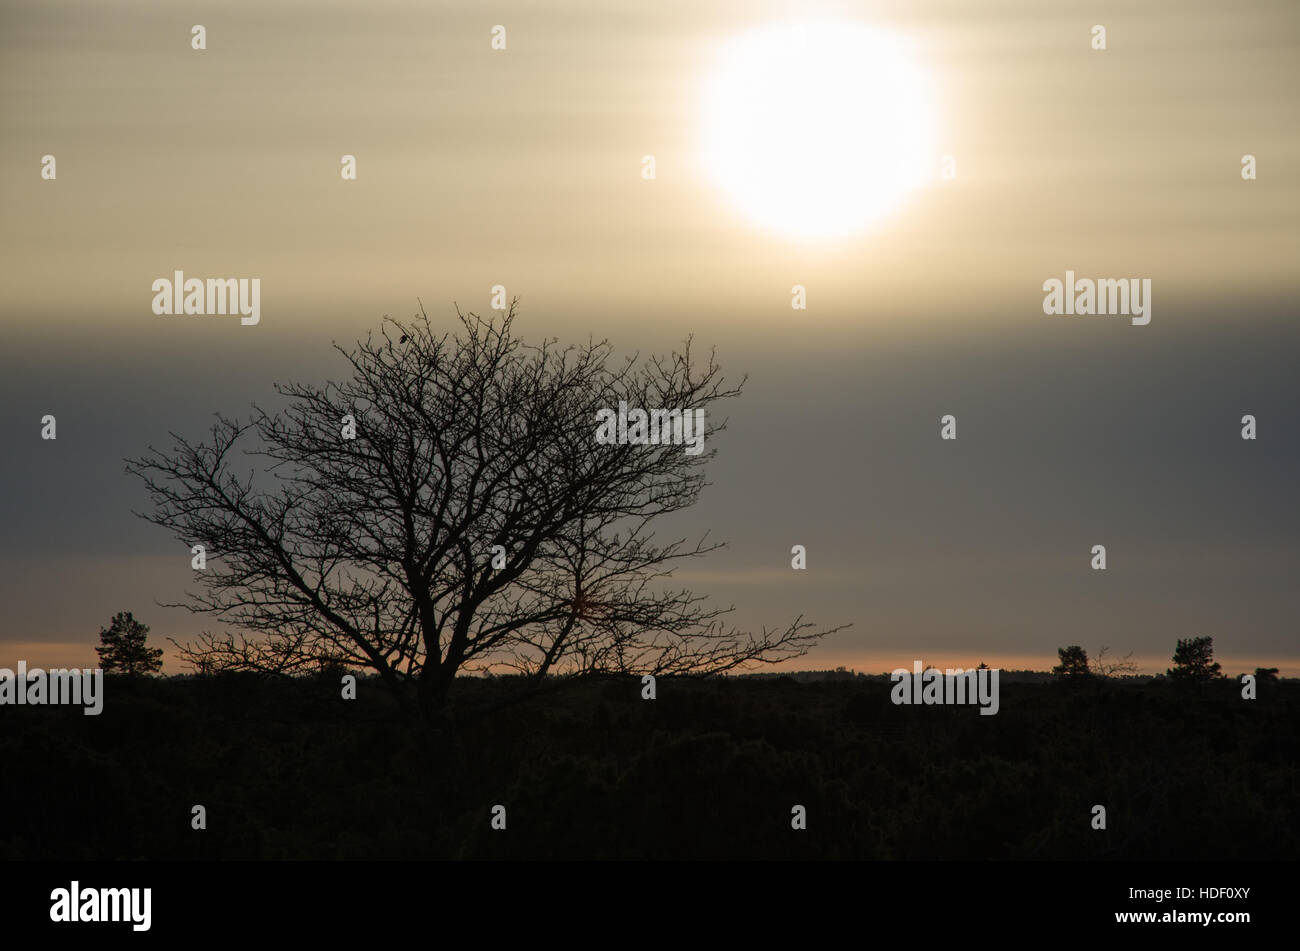 Paysage sombre avec un arbre silhouette parmi les genévriers au swedish island Oland Banque D'Images